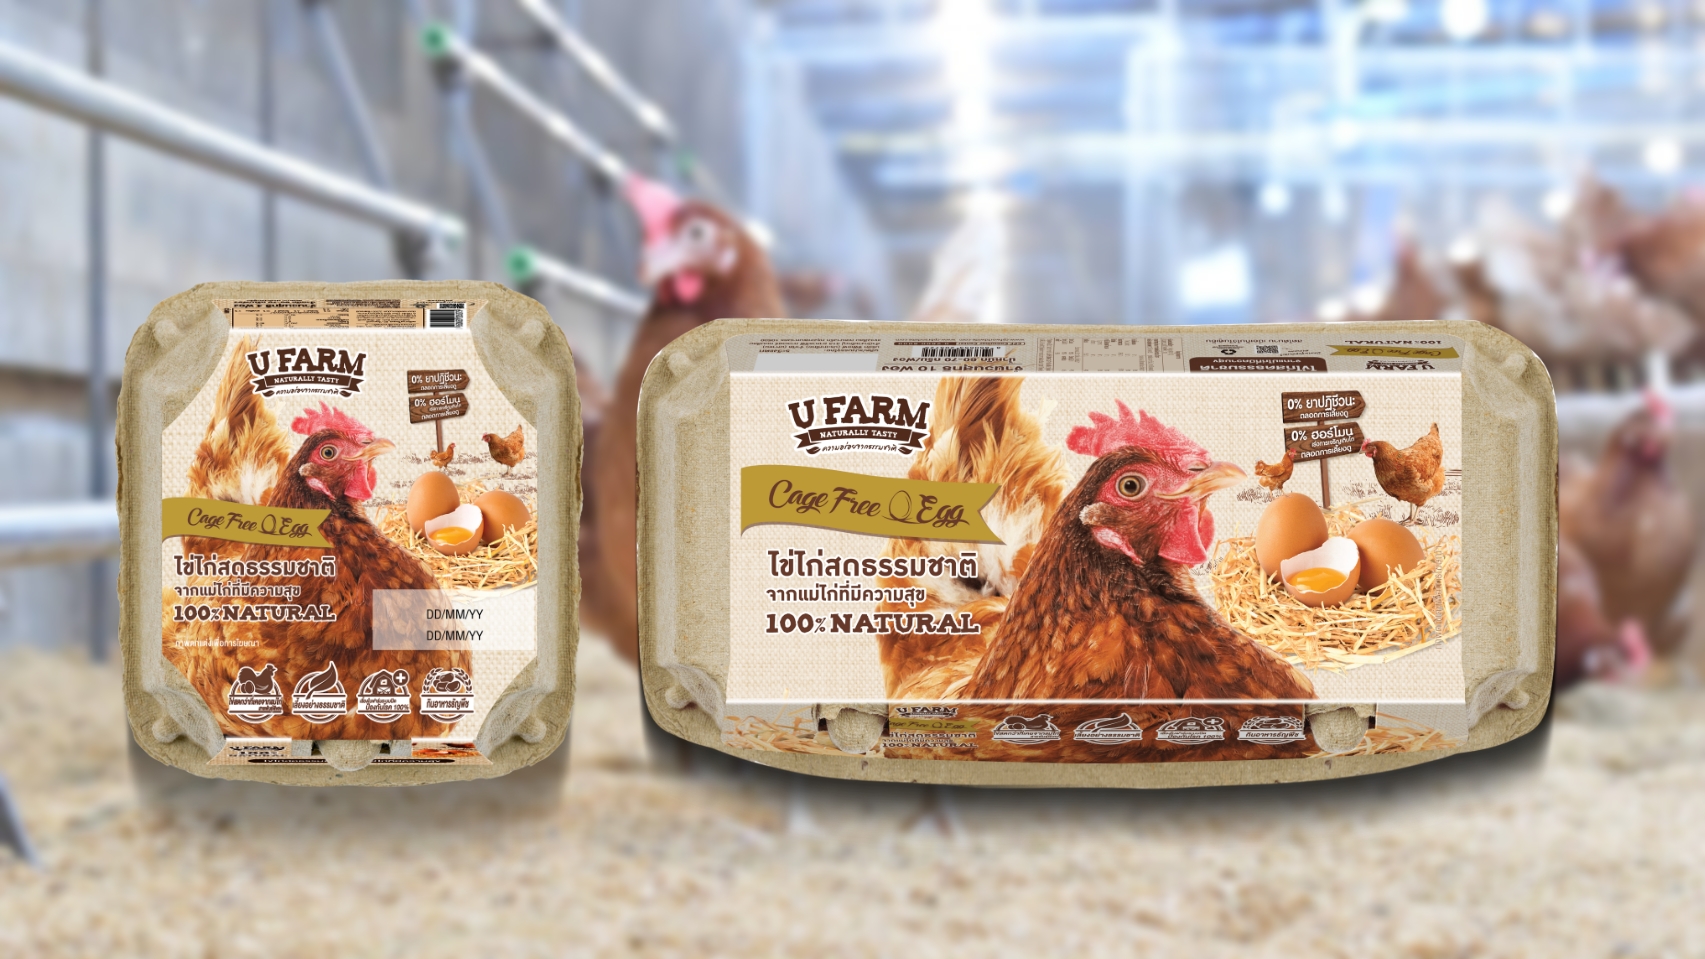 ซีพีเอฟ นำ ไข่ไก่ Cage Free รับ “ฉลากคาร์บอนนิวทรัล” เป็นรายแรกของภูมิภาคเอเชีย เพิ่มทางเลือกคนไทยได้บริโภคไข่ไก่สด CP ช่วยลดโลกร้อน